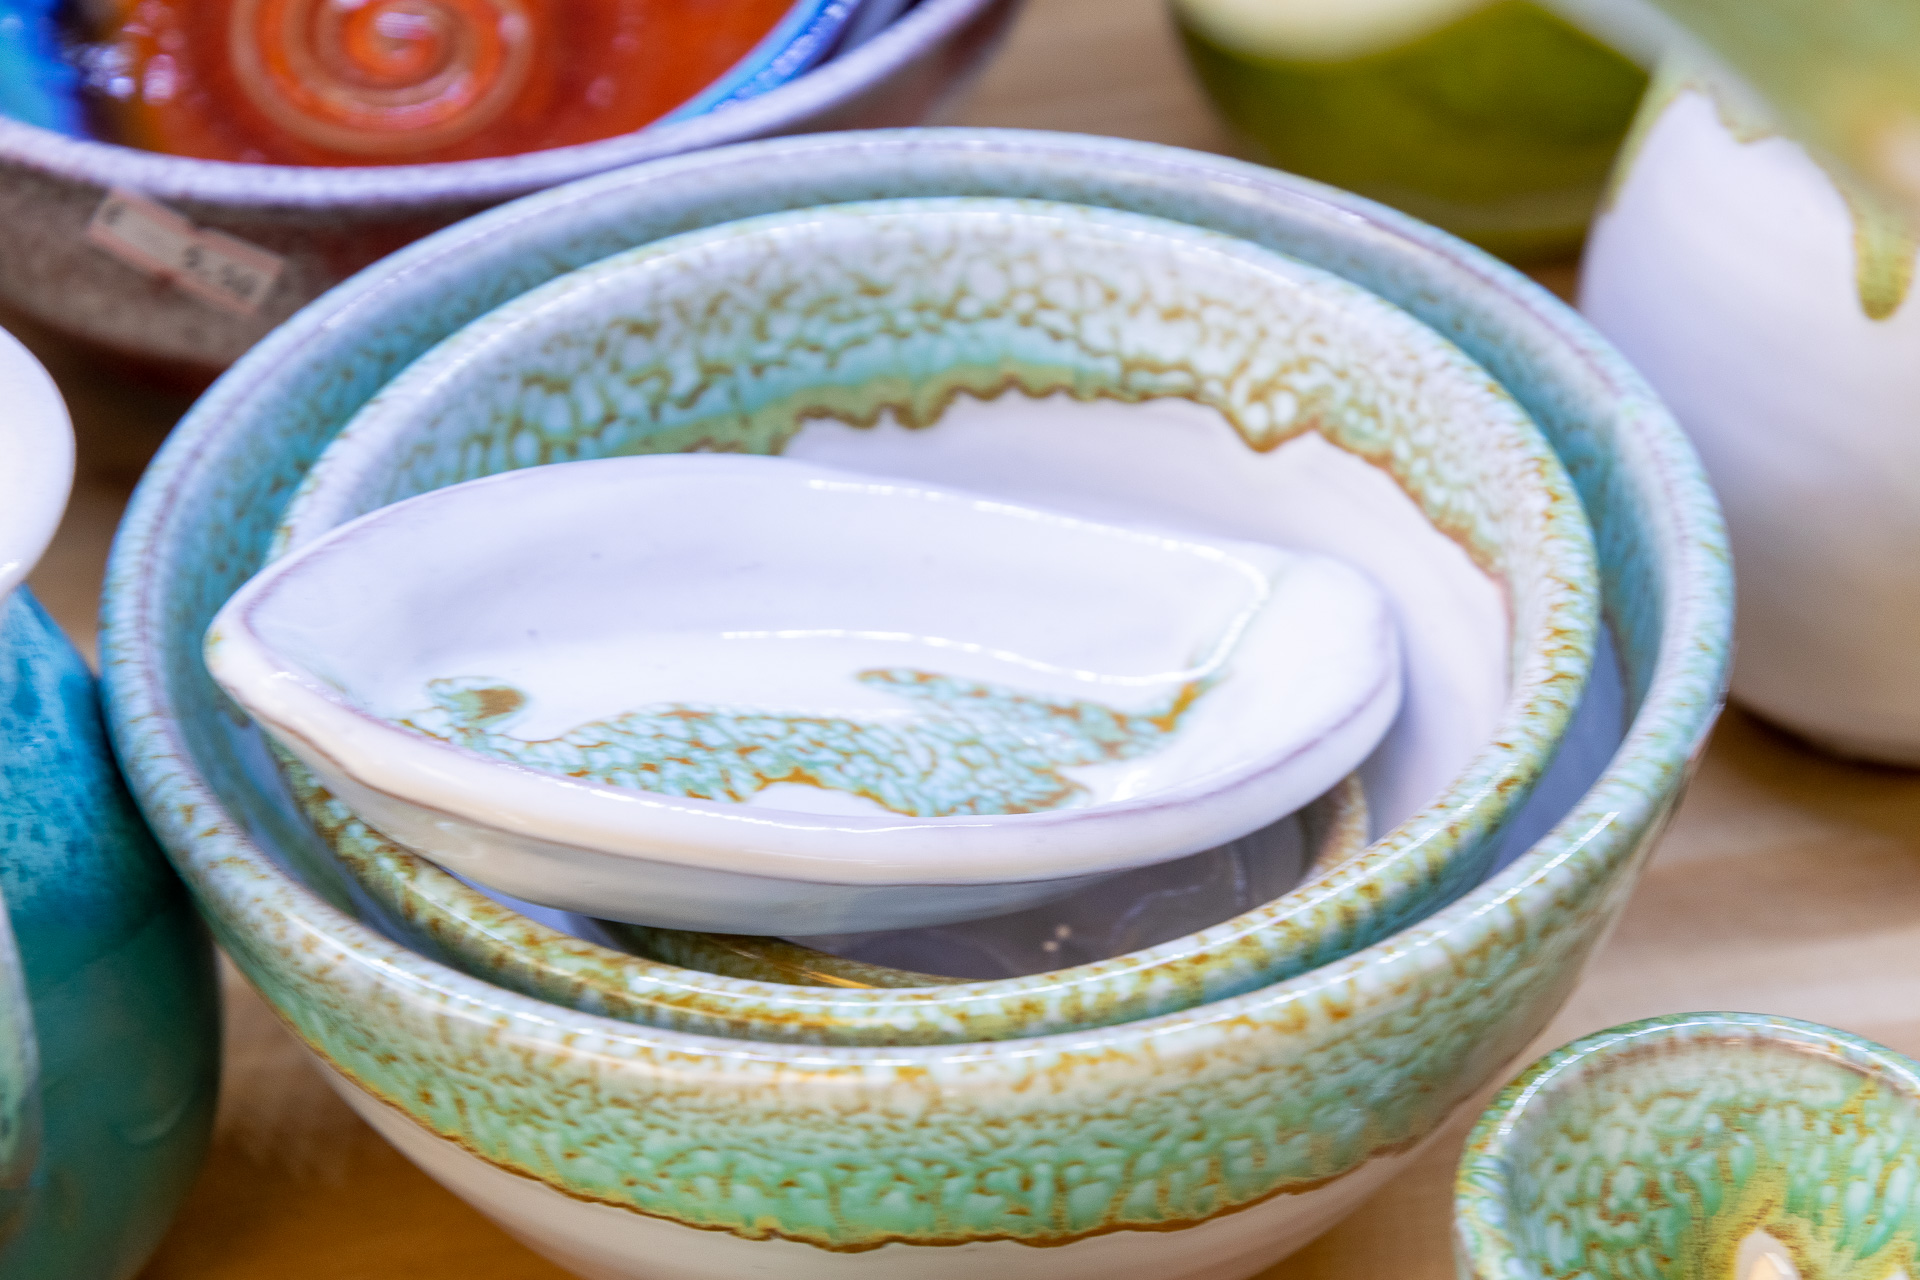 Serving items - Michael Laventzakis\' Handmade Ceramics in Chania